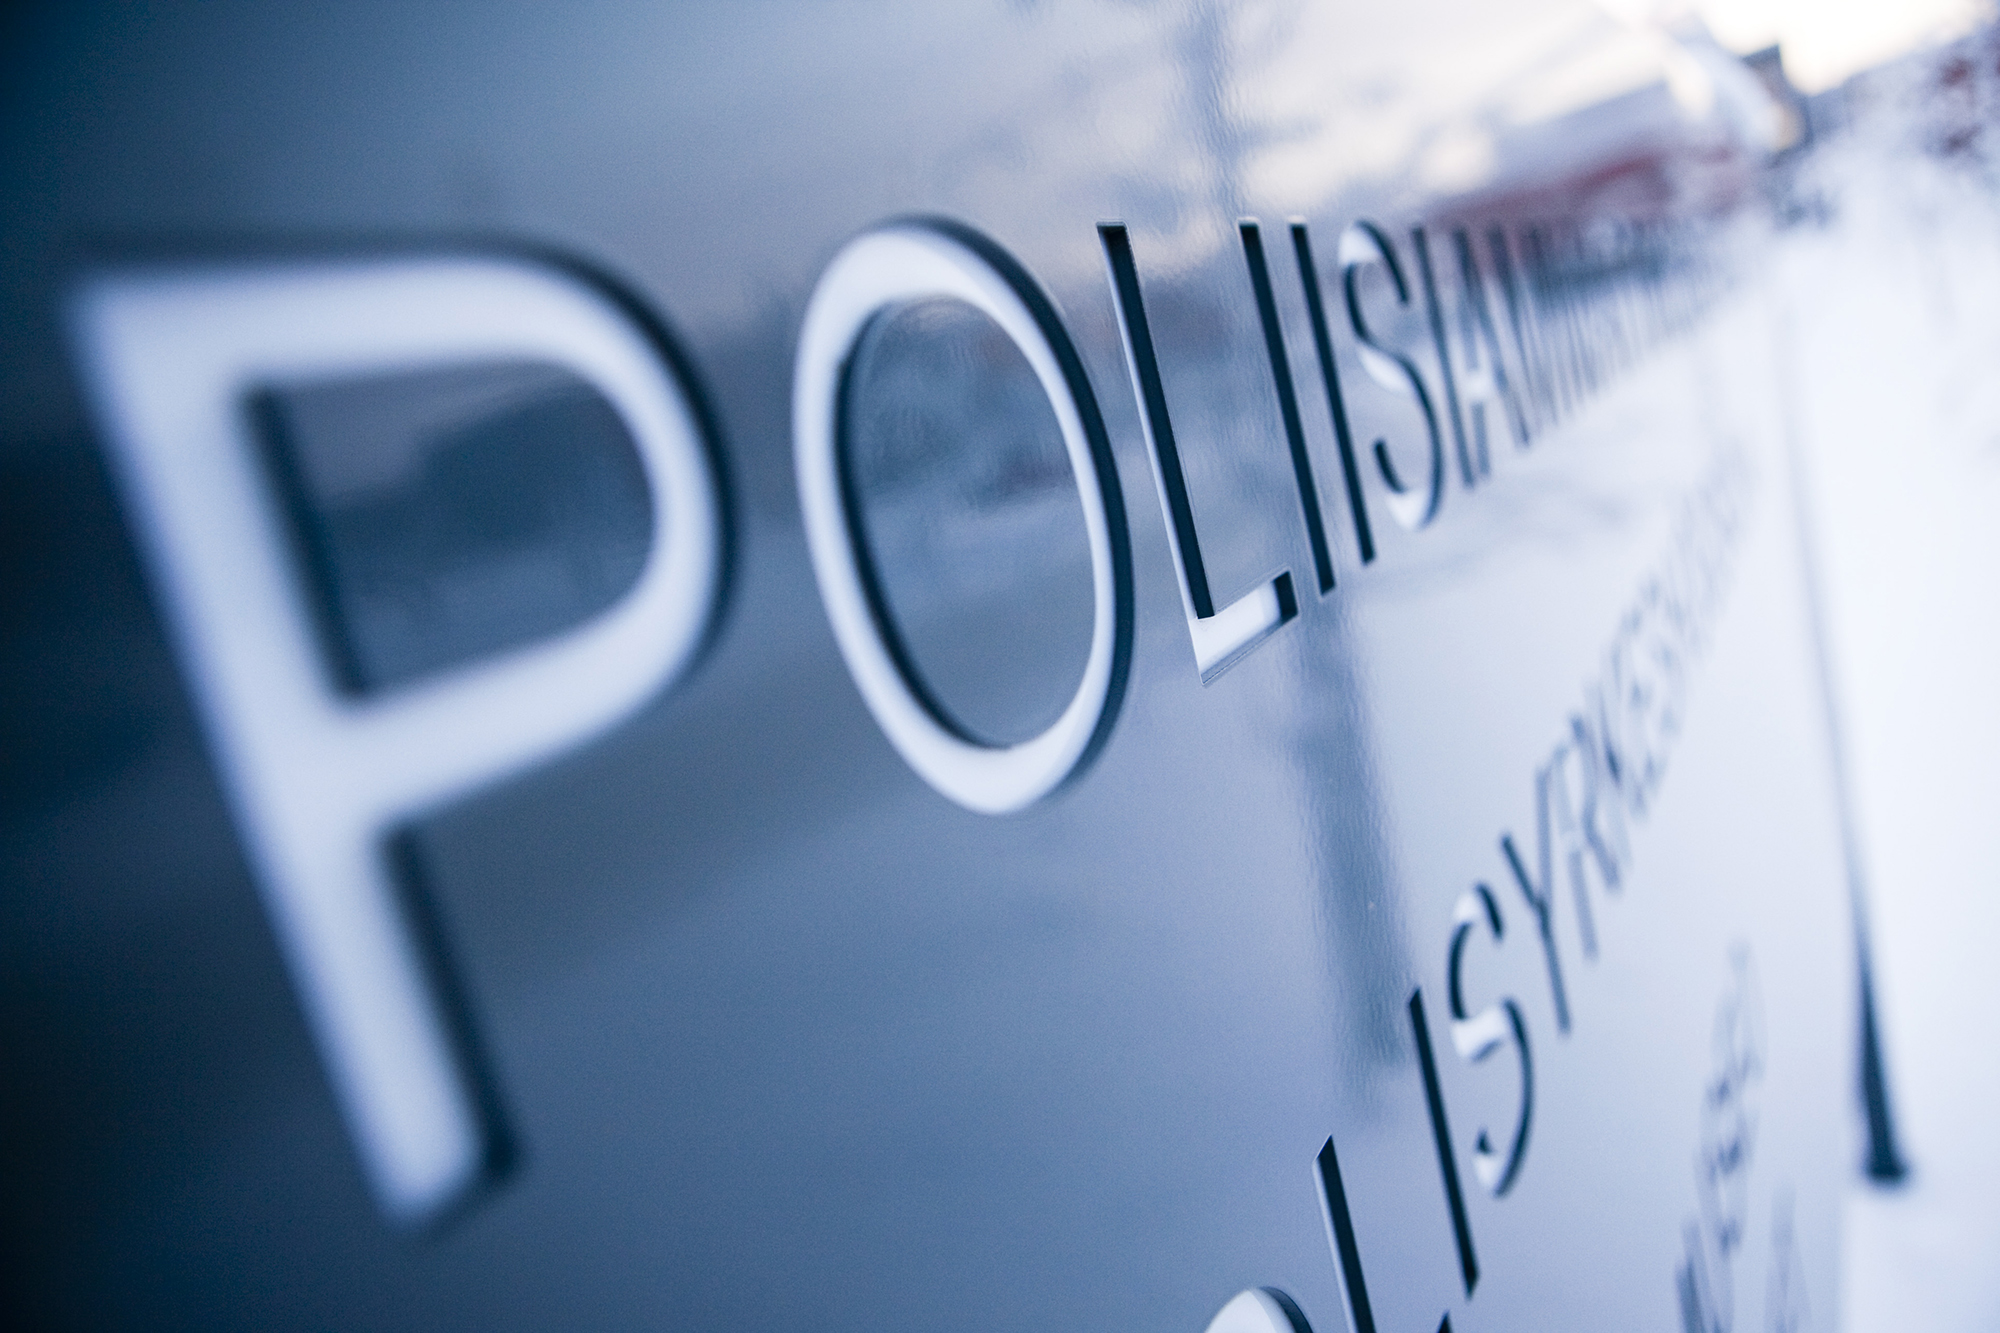 Osa kyltistä, jossa lukee Poliisiammattikorkeakoulu Polisyrkeshögskolan.